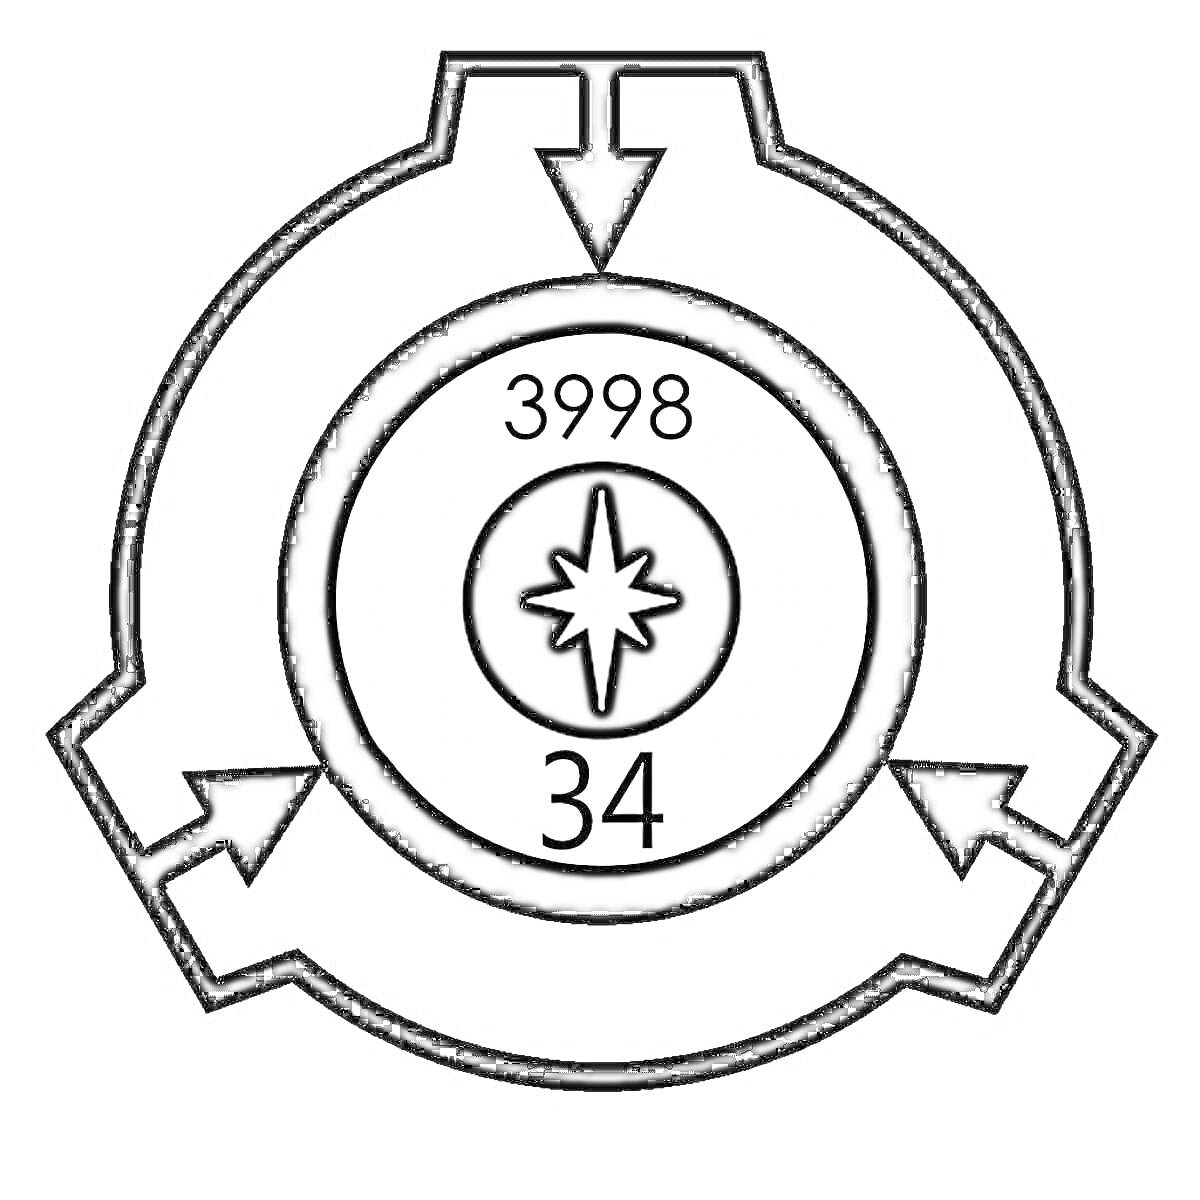 Логотип SCP Foundation с числами 3998 и 34, белая звезда в черном круге, чёрные стрелки